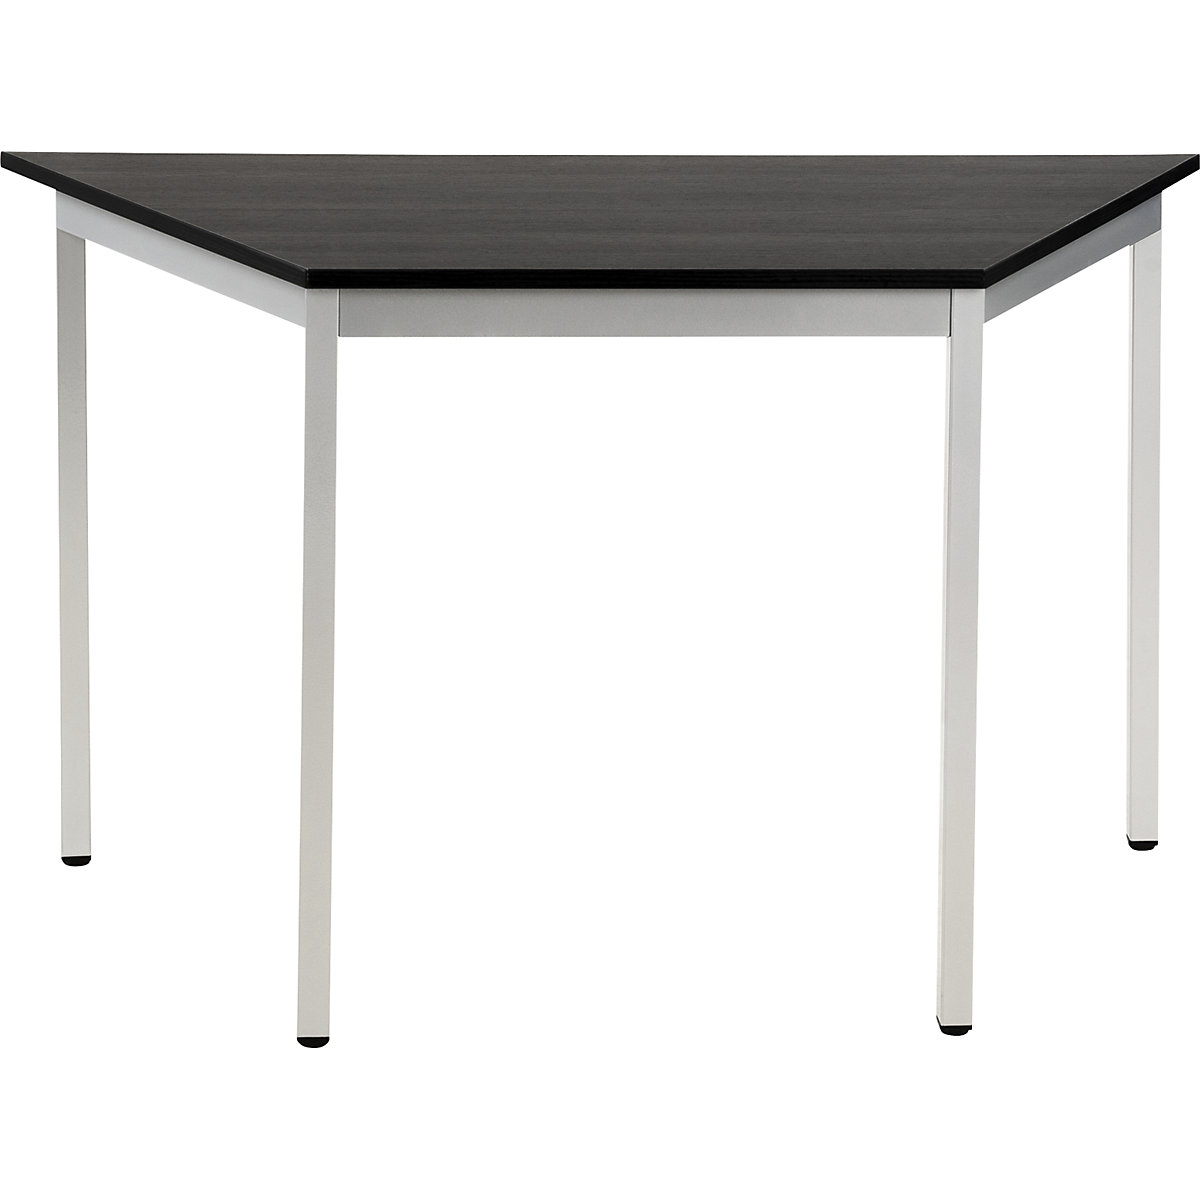 Víceúčelový stůl – eurokraft basic, lichoběžníkový tvar, v x š x h 740 x 1200 x 600 mm, deska v jasanovém dekoru tmavá šedá, podstavec v barvě bílý hliník-15